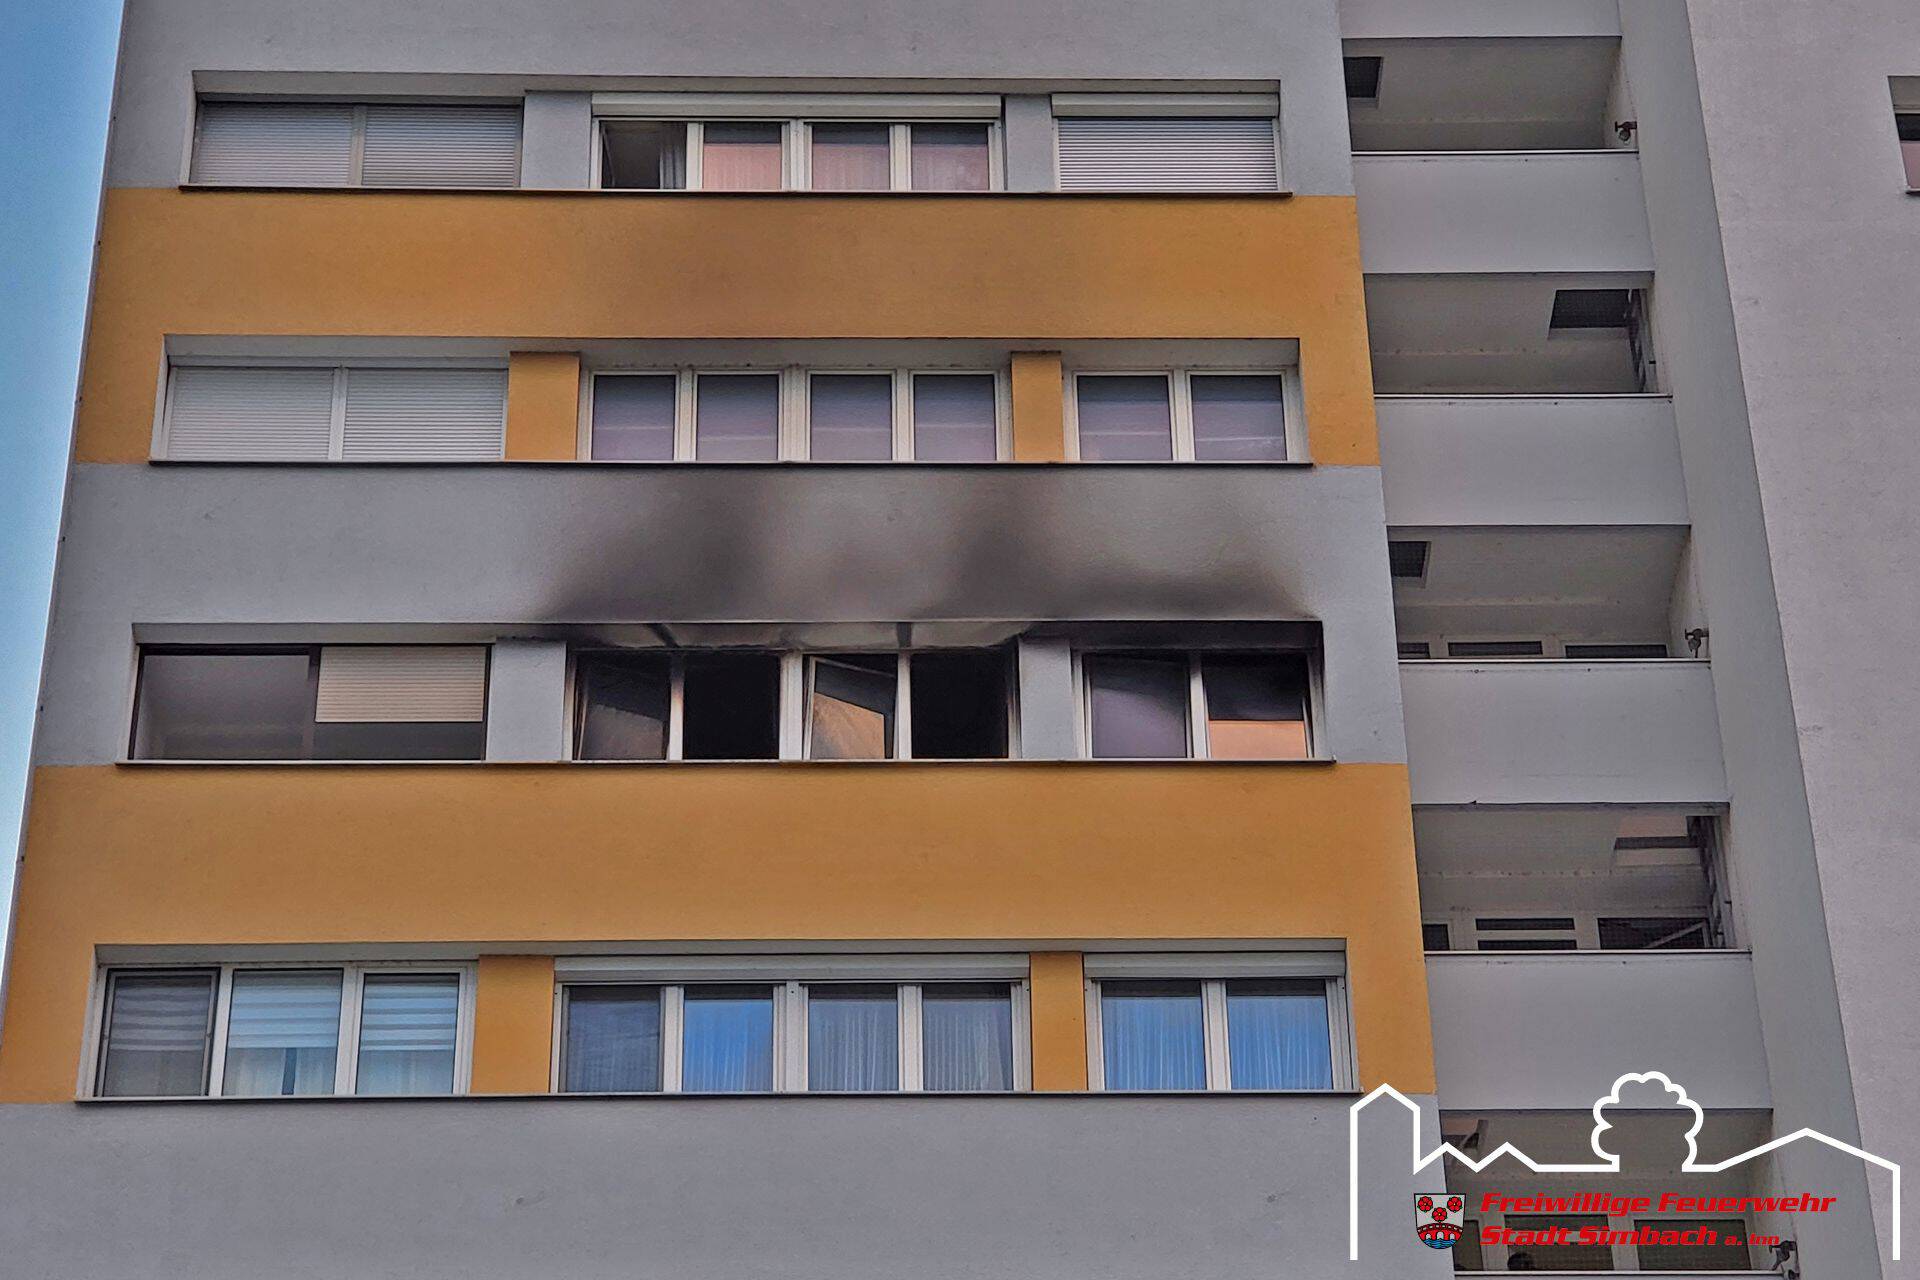 Wohnungsbrand in Hochhaus 03.07.2022 (16)